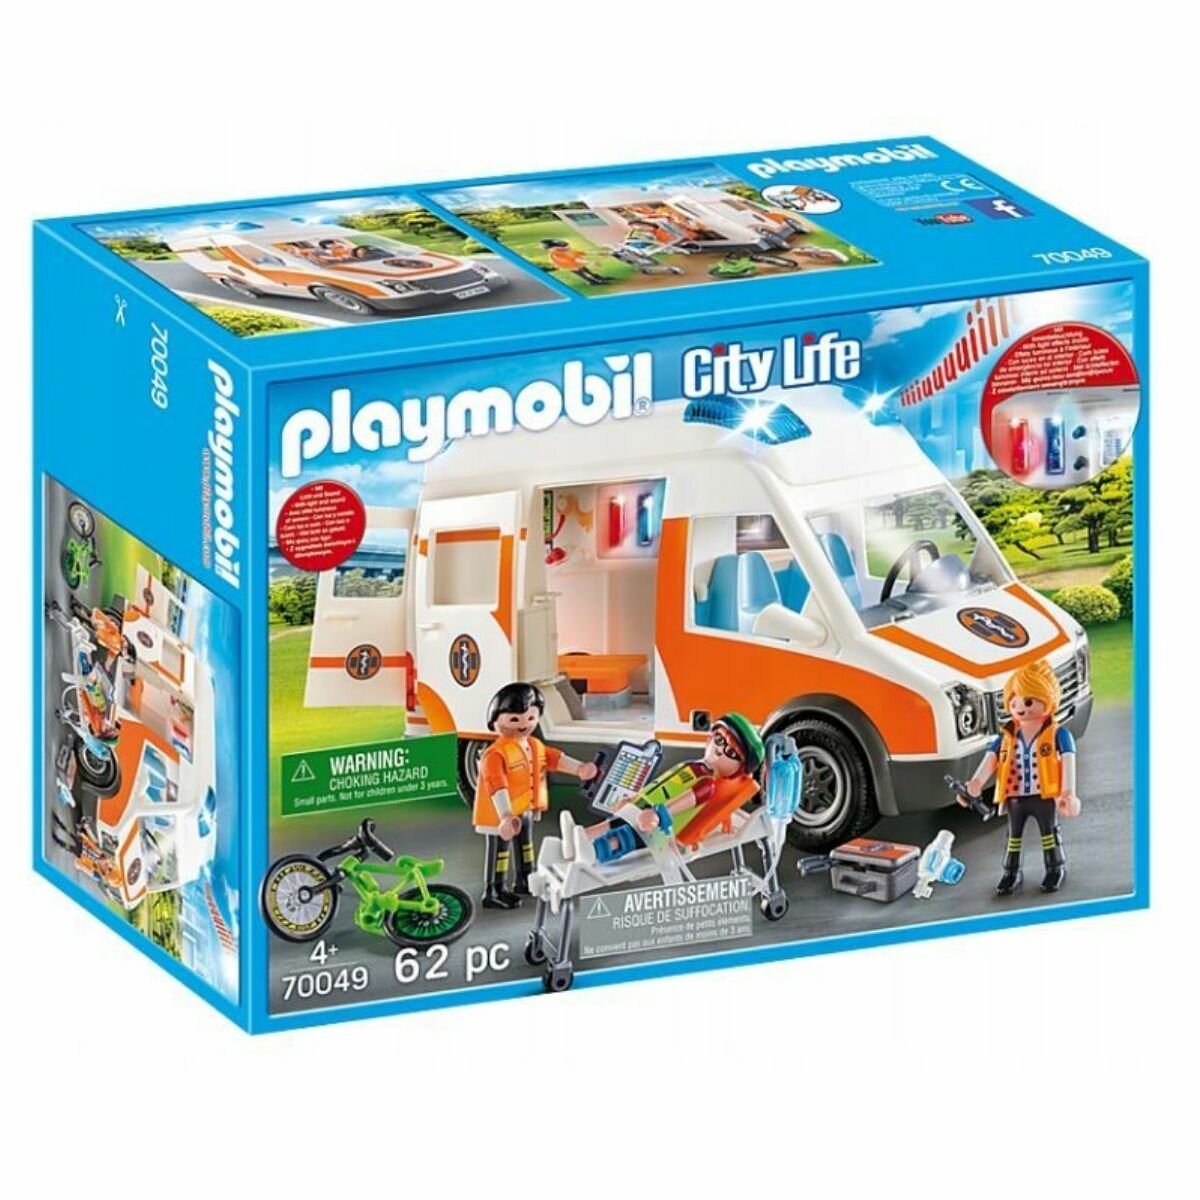 Набор с элементами конструктора Playmobil City Life 70049 скорая помощь с мигалкой, 62 дет.